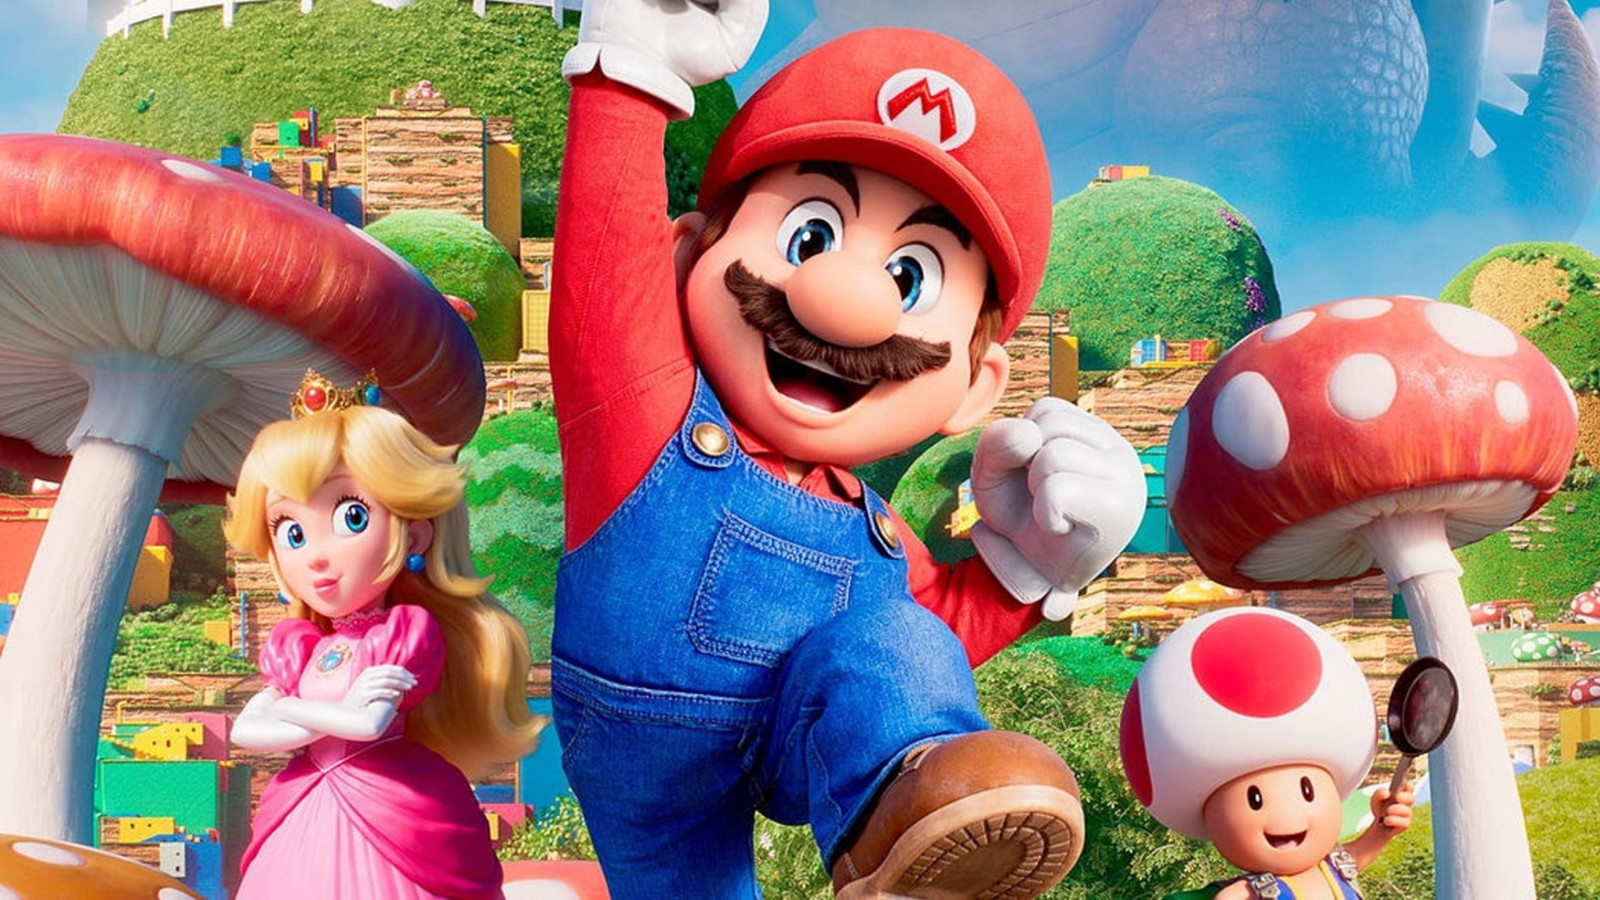 Chris Pratt voiced Mario in The Super Mario Bros. Movie